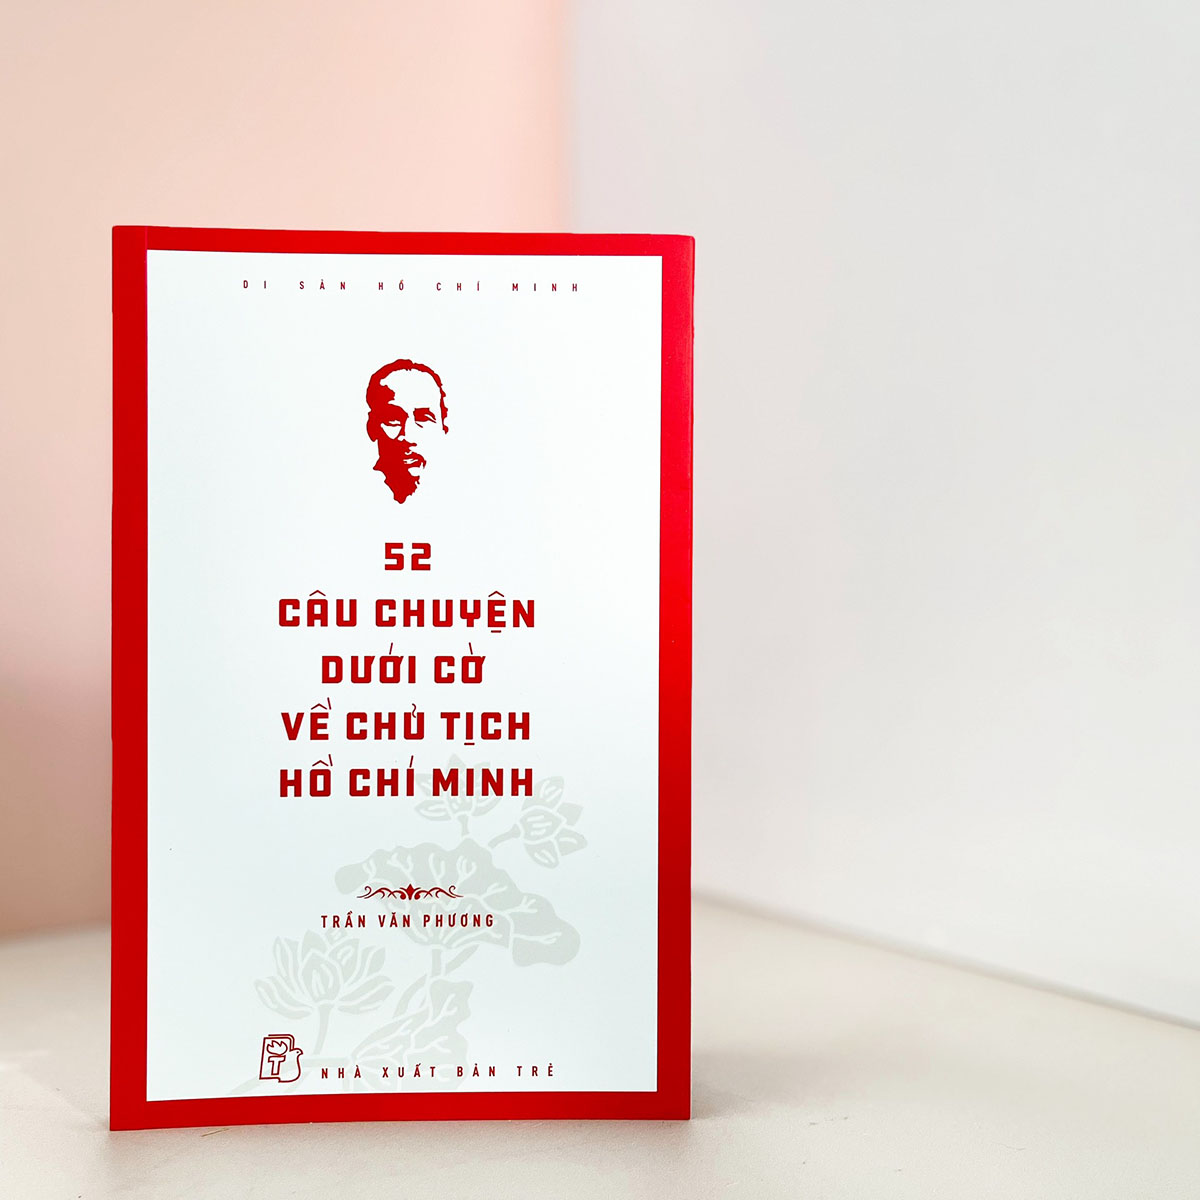 Di sản Hồ Chí Minh. 52 câu chuyện dưới cờ về Chủ tịch Hồ Chí Minh